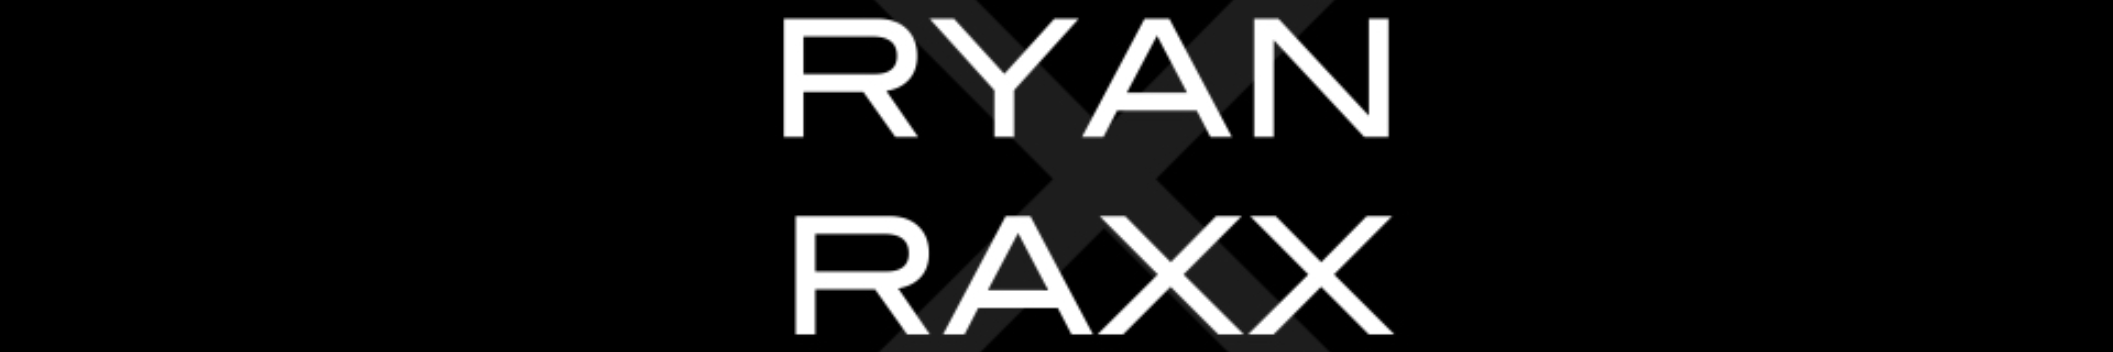 ryanraxx